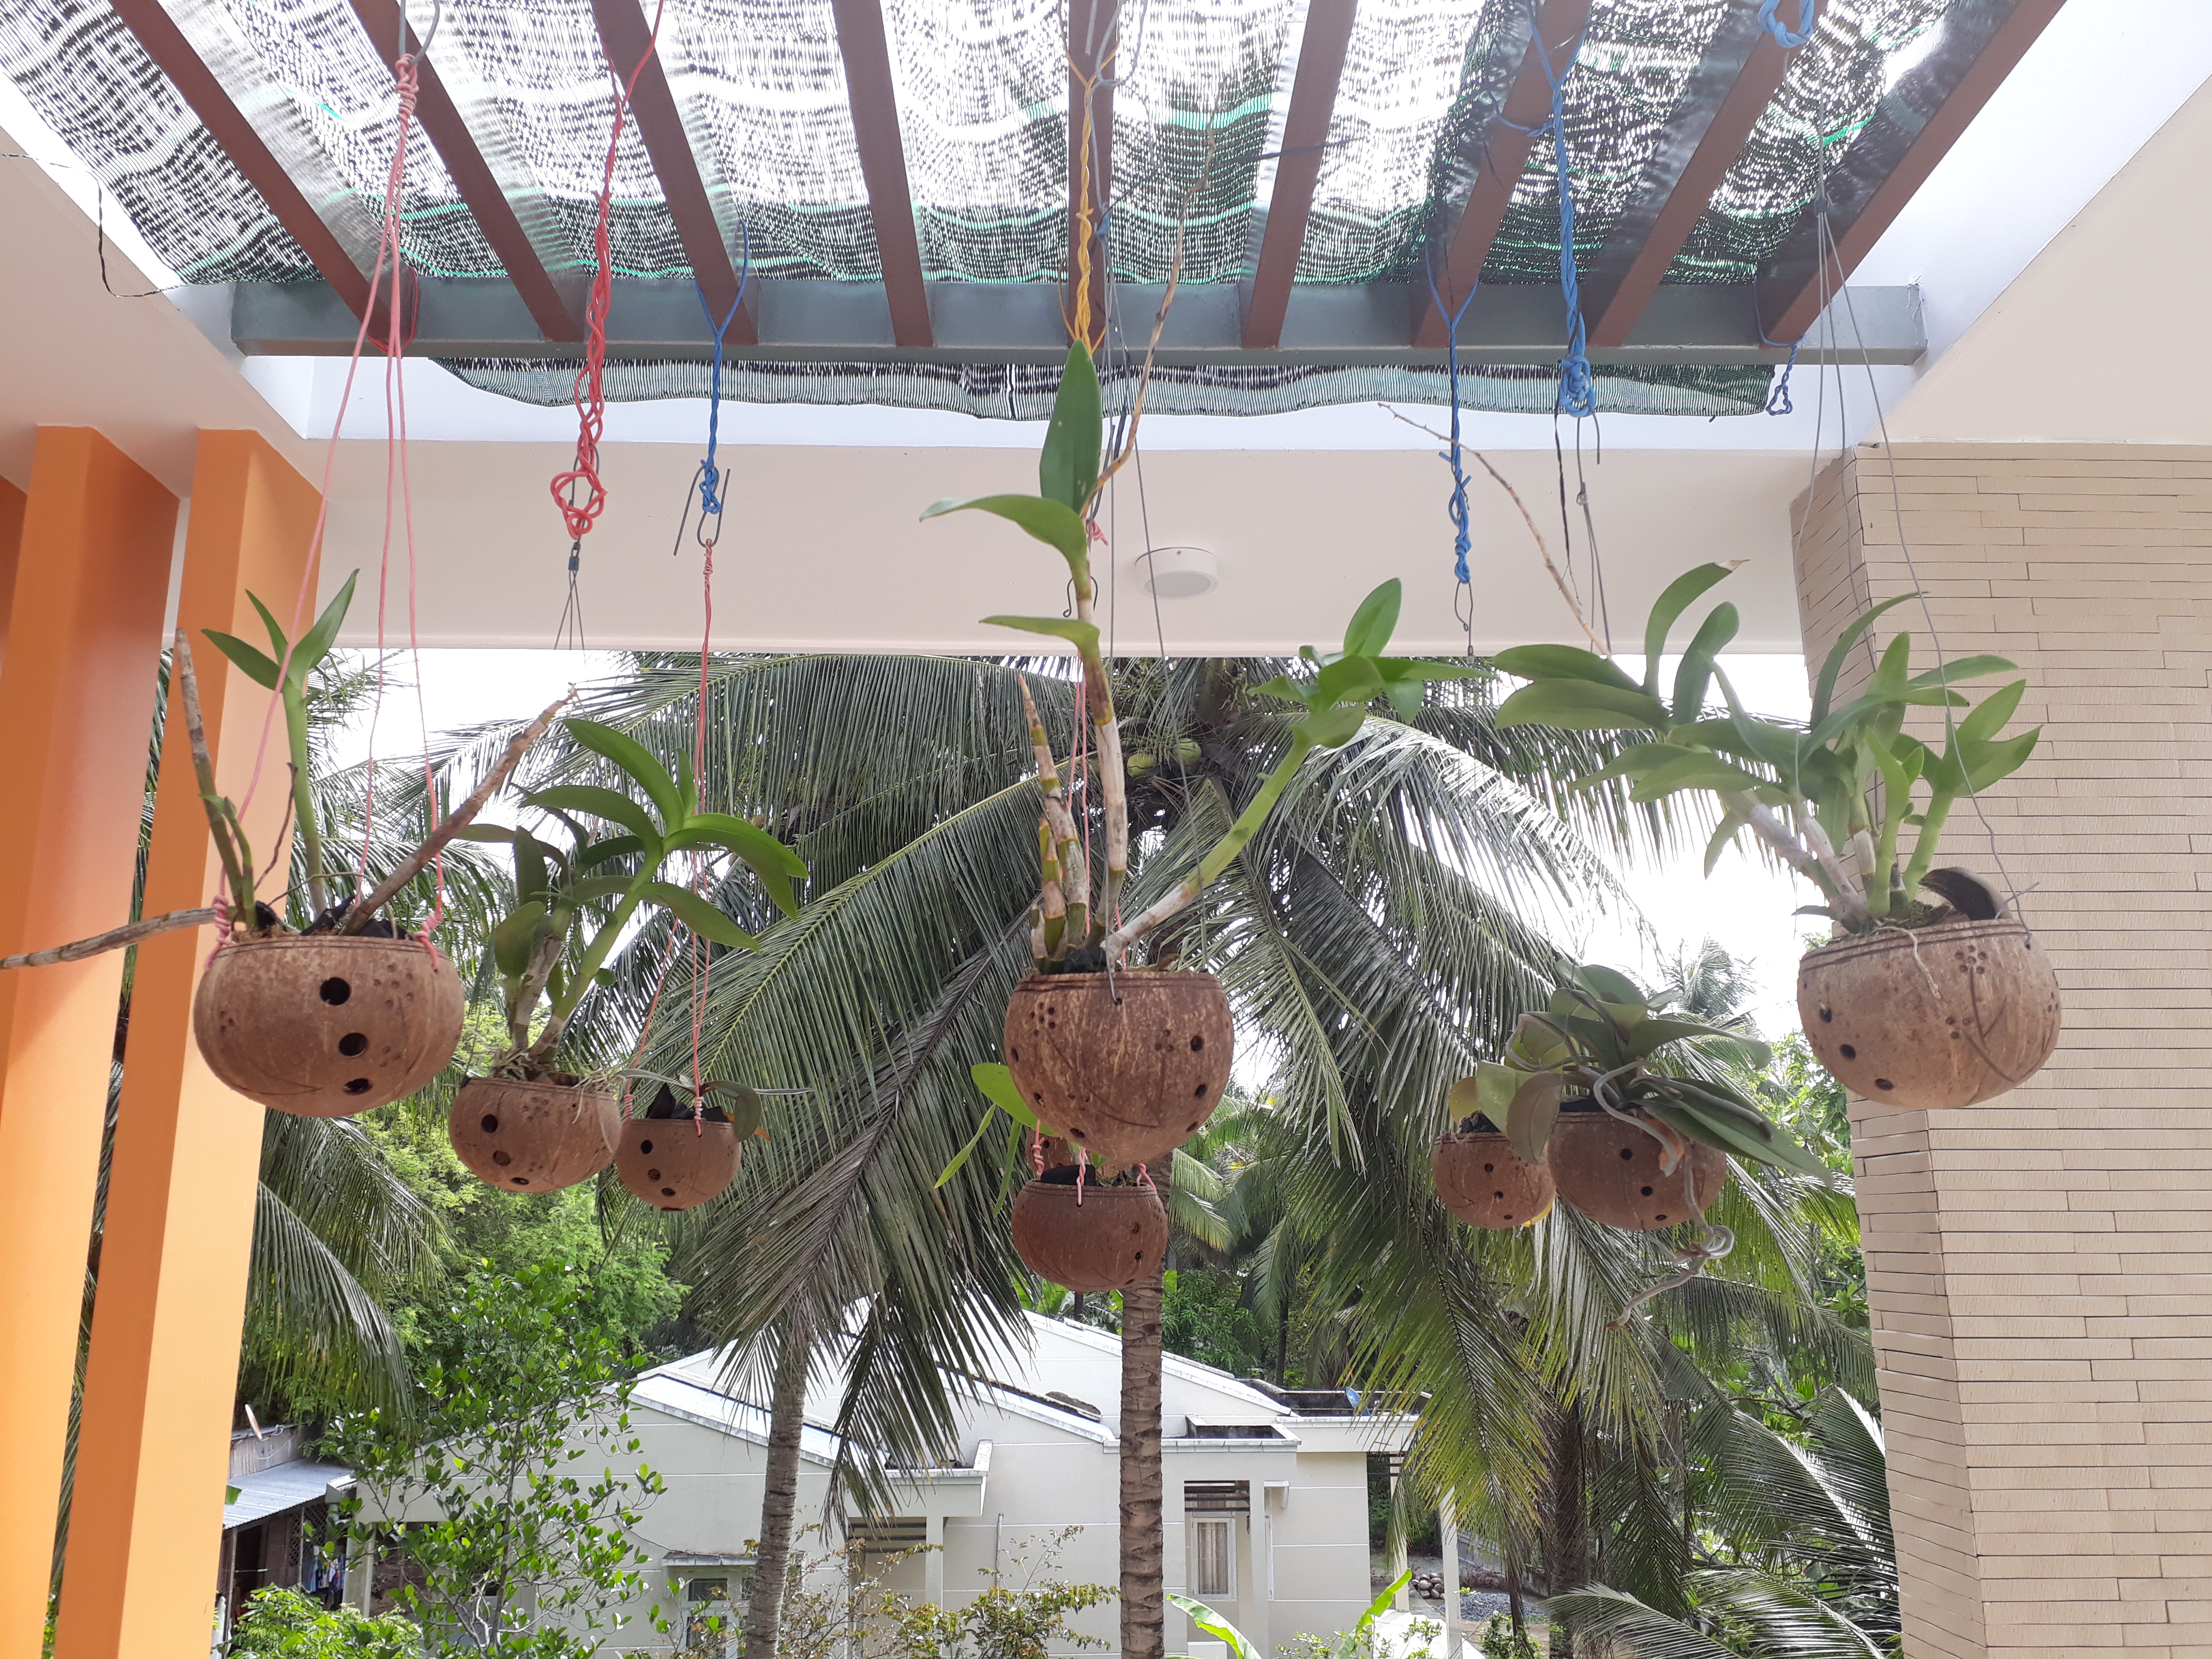 Gáo dừa trồng lan trồng lan bằng gáo dừa